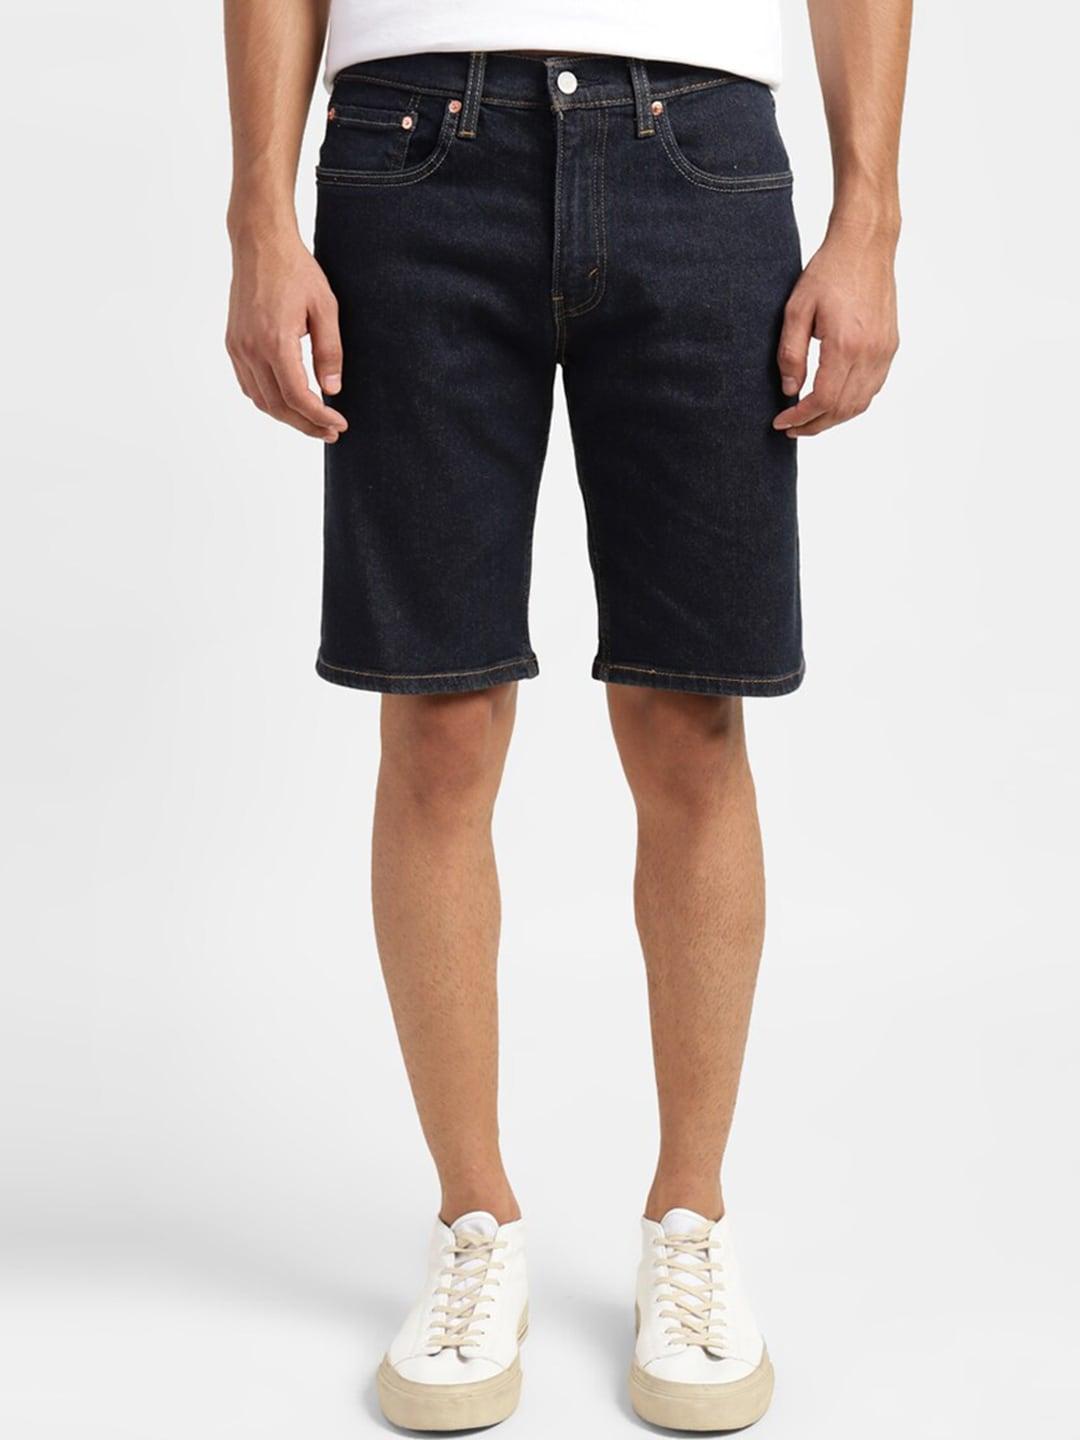 levis-men-mid-rise-cotton-denim-shorts